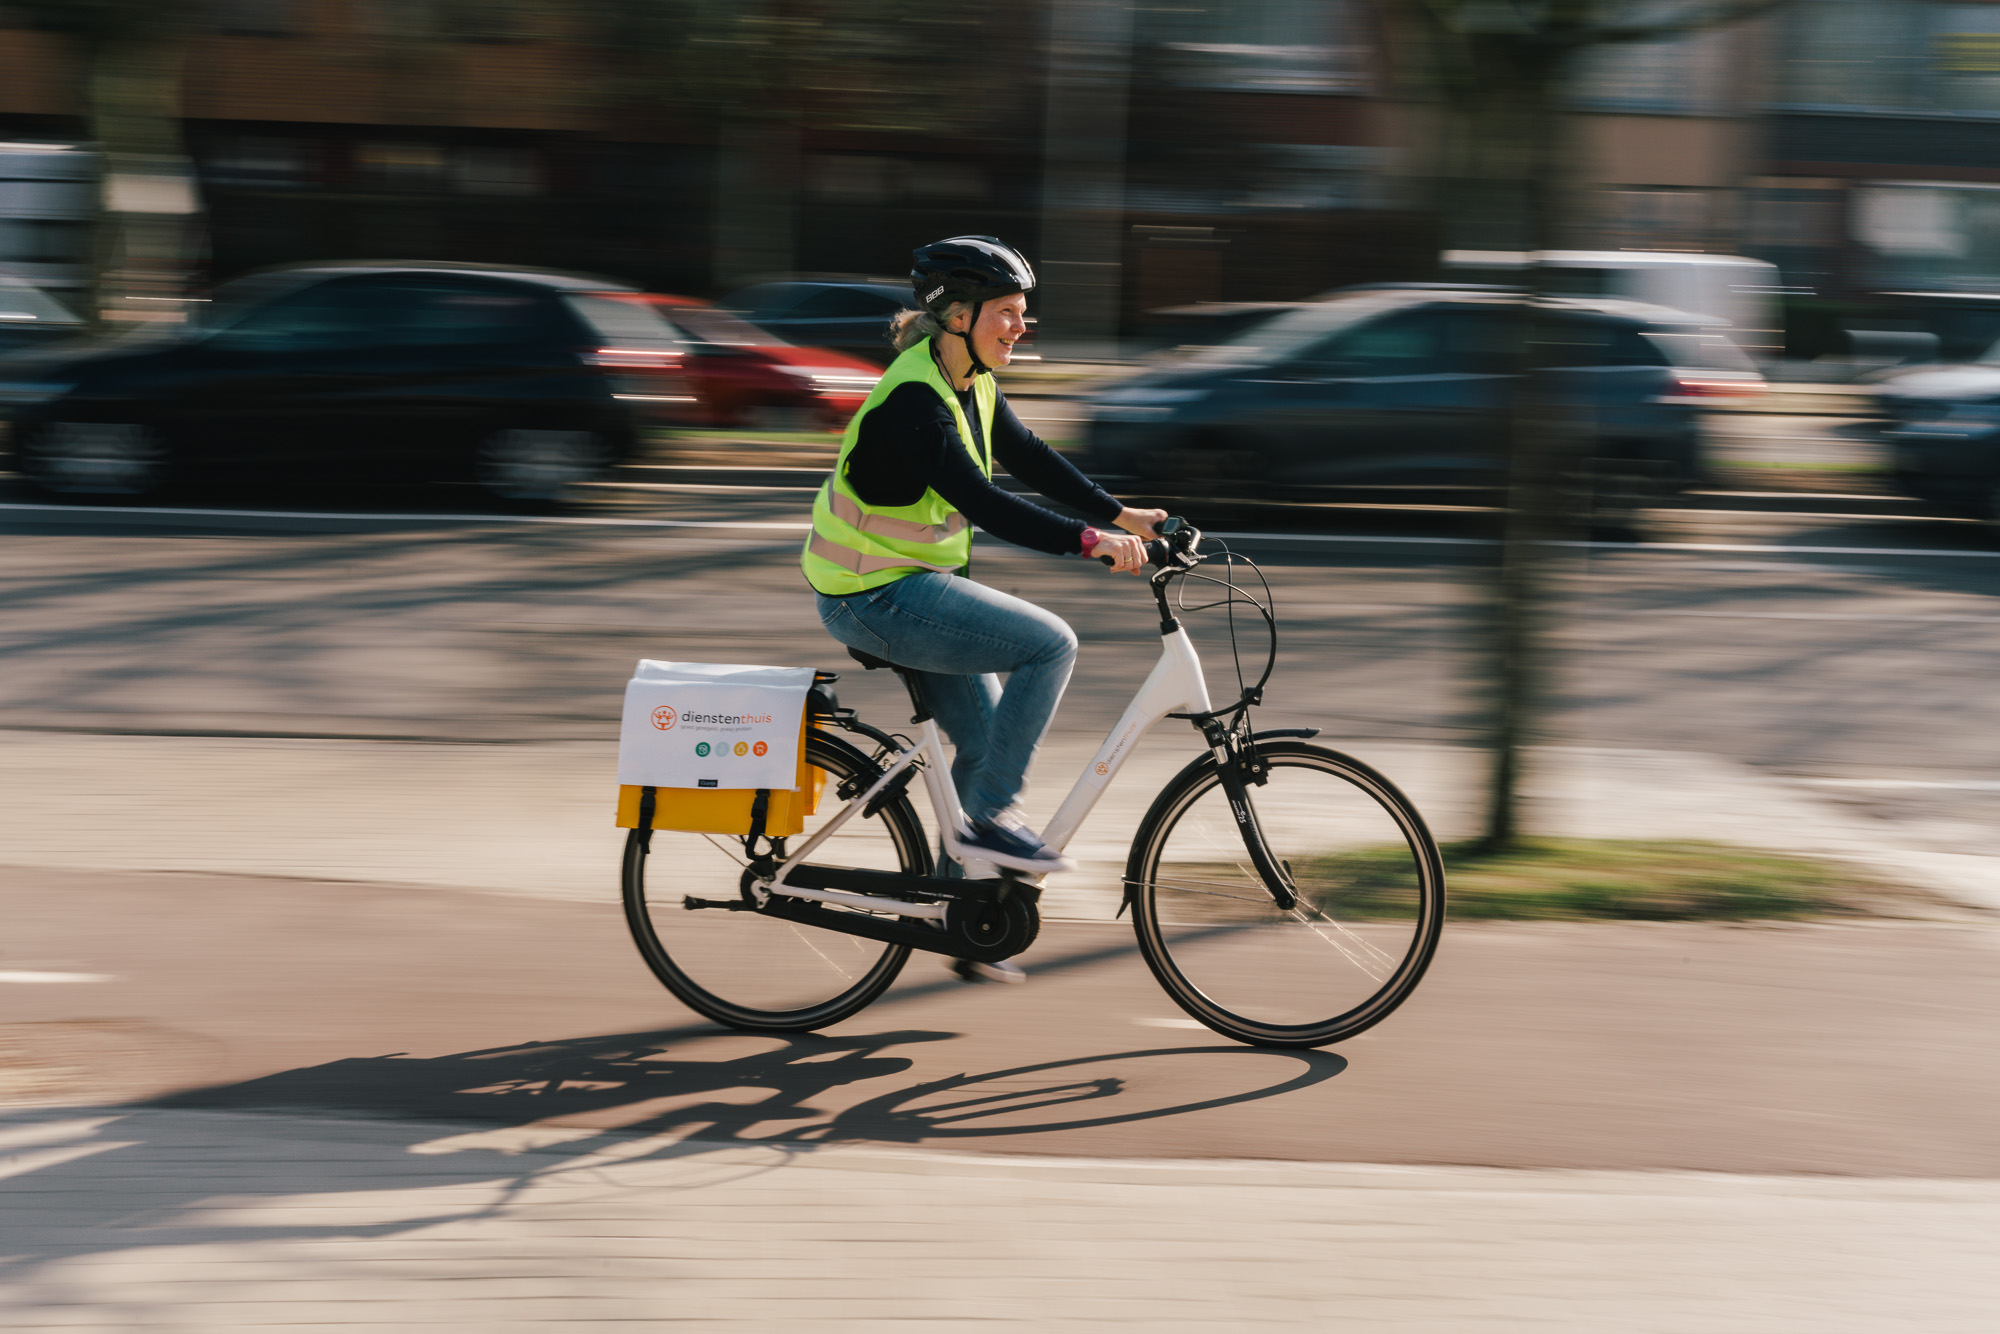 Dienstenthuis zet verder mobiliteit en breidt haar fietsaanbod aan medewerkers uit met pechverhelping - Dienstenthuis